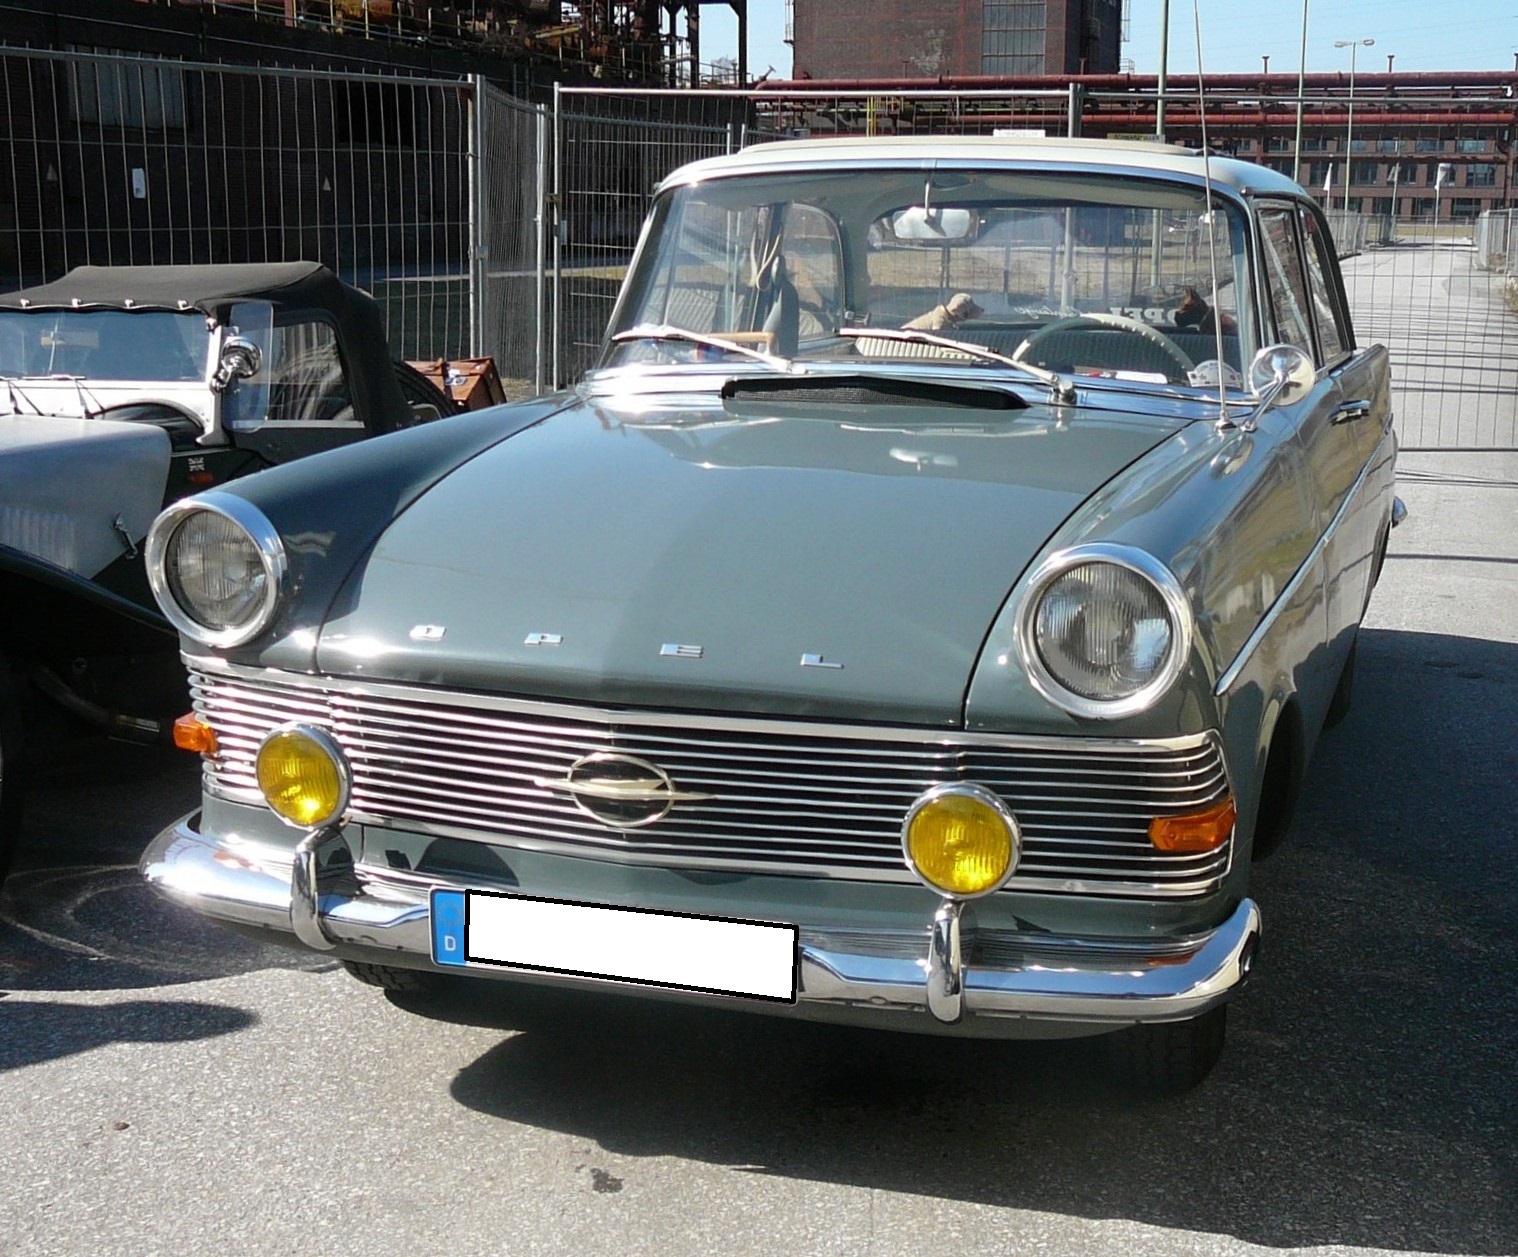 Opel Olympia Rekord P2, produziert von August 1960 bis Frühsommer 1963. Hier wurde eine zweitürige Limousine in der Farbkombination alabastergrau/rivagrau abgelichtet. Dieser Rekord ist ein 1700. Der stärkere 1.7l Motor mit 55 PS, kostete im Gegensatz zur Standardmotorisierung mit 1.5l und 50 PS einen Aufpreis von DM 75,00. Oldtimertreffen an der  Kokerei Zollverein  in Essen im Juli 2012.